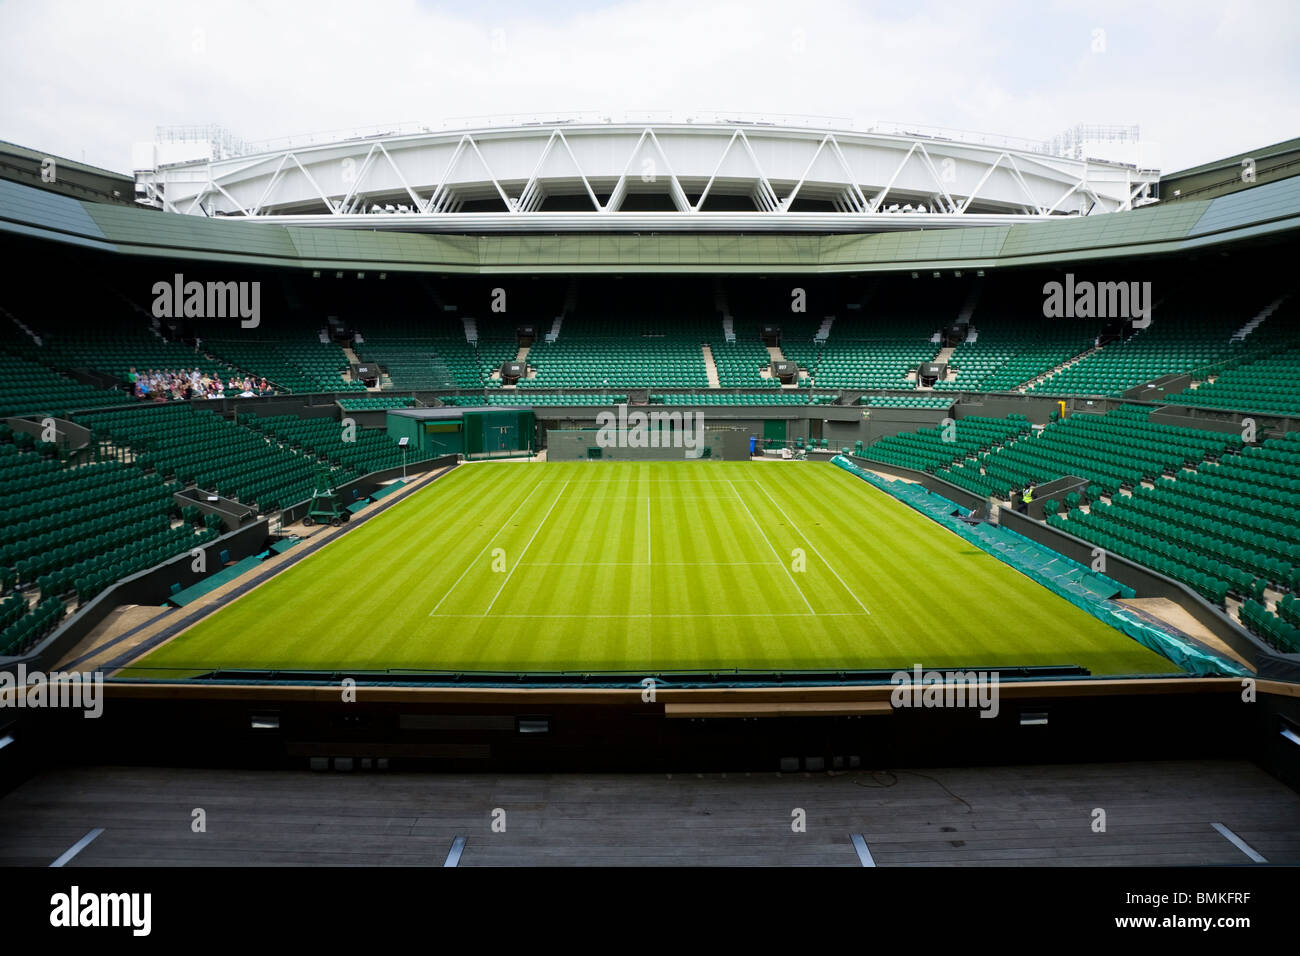 Fotografia del Centre Court Wimbledon / Tennis Championship stadium arena con il tetto apribile. Il torneo di Wimbledon, Regno Unito. Foto Stock